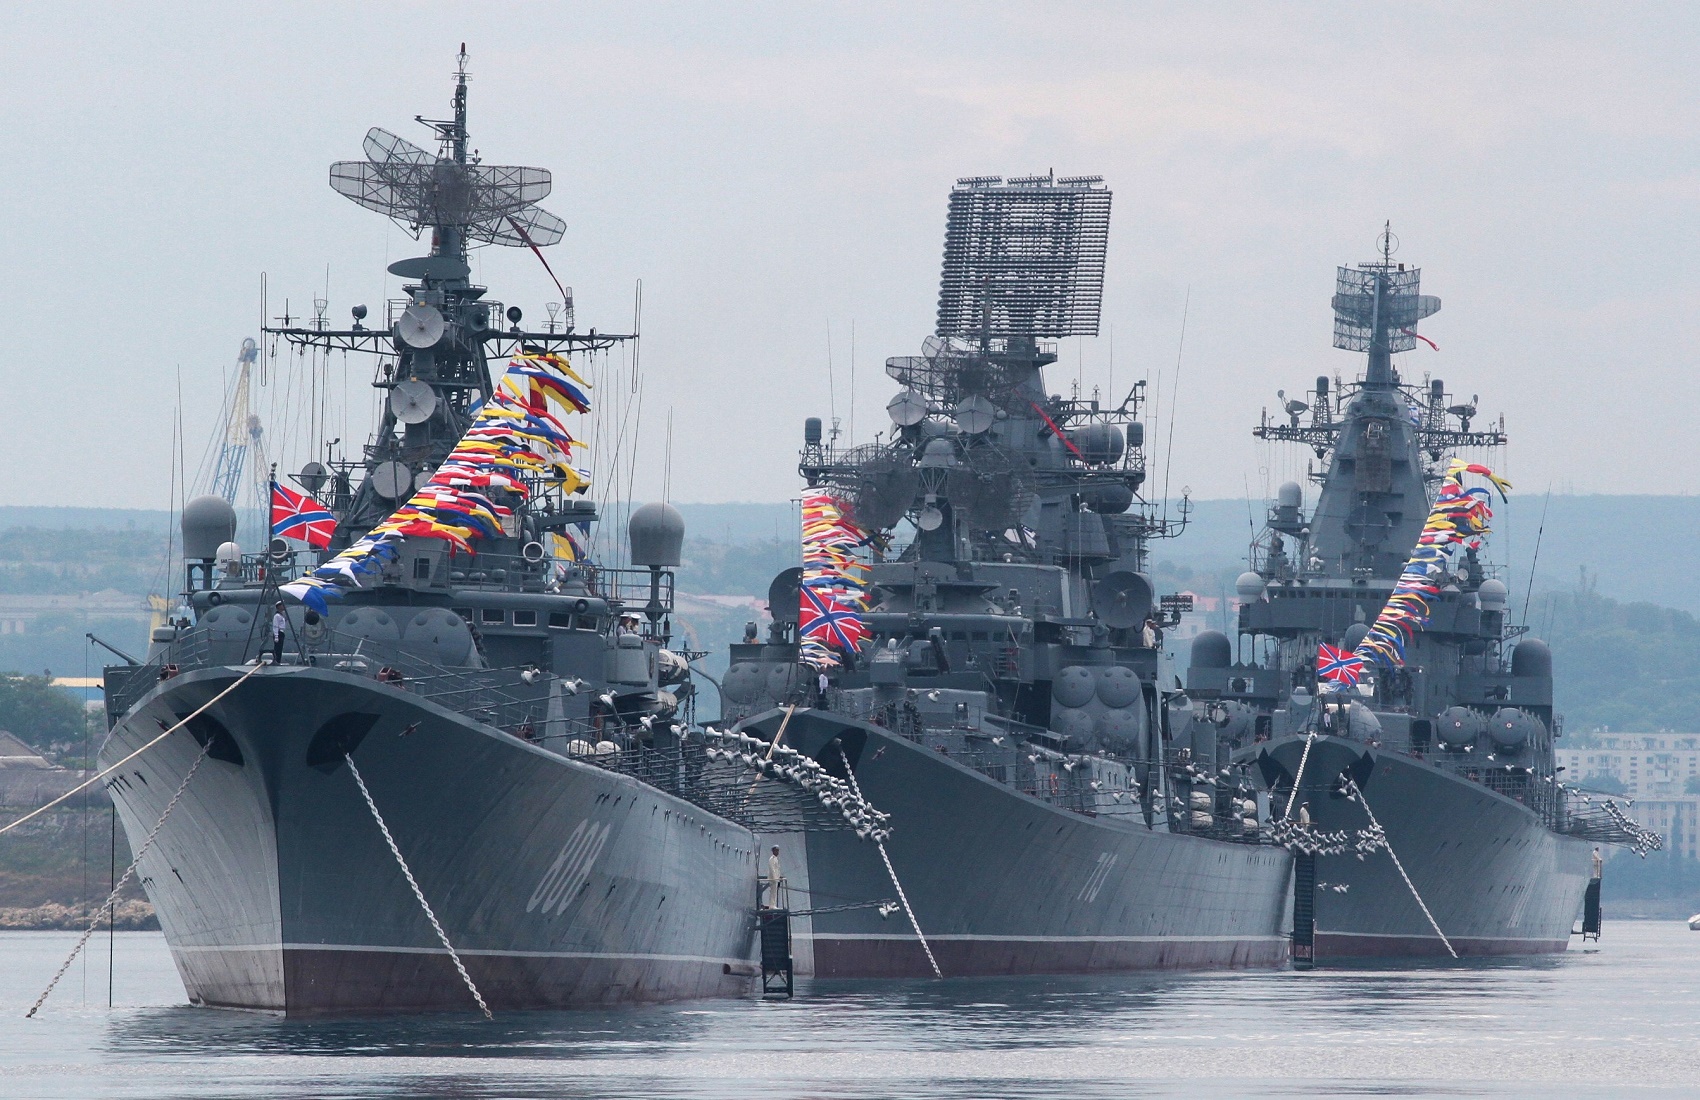 ВМФ России проведёт совместные учения с НАТО впервые за десять лет